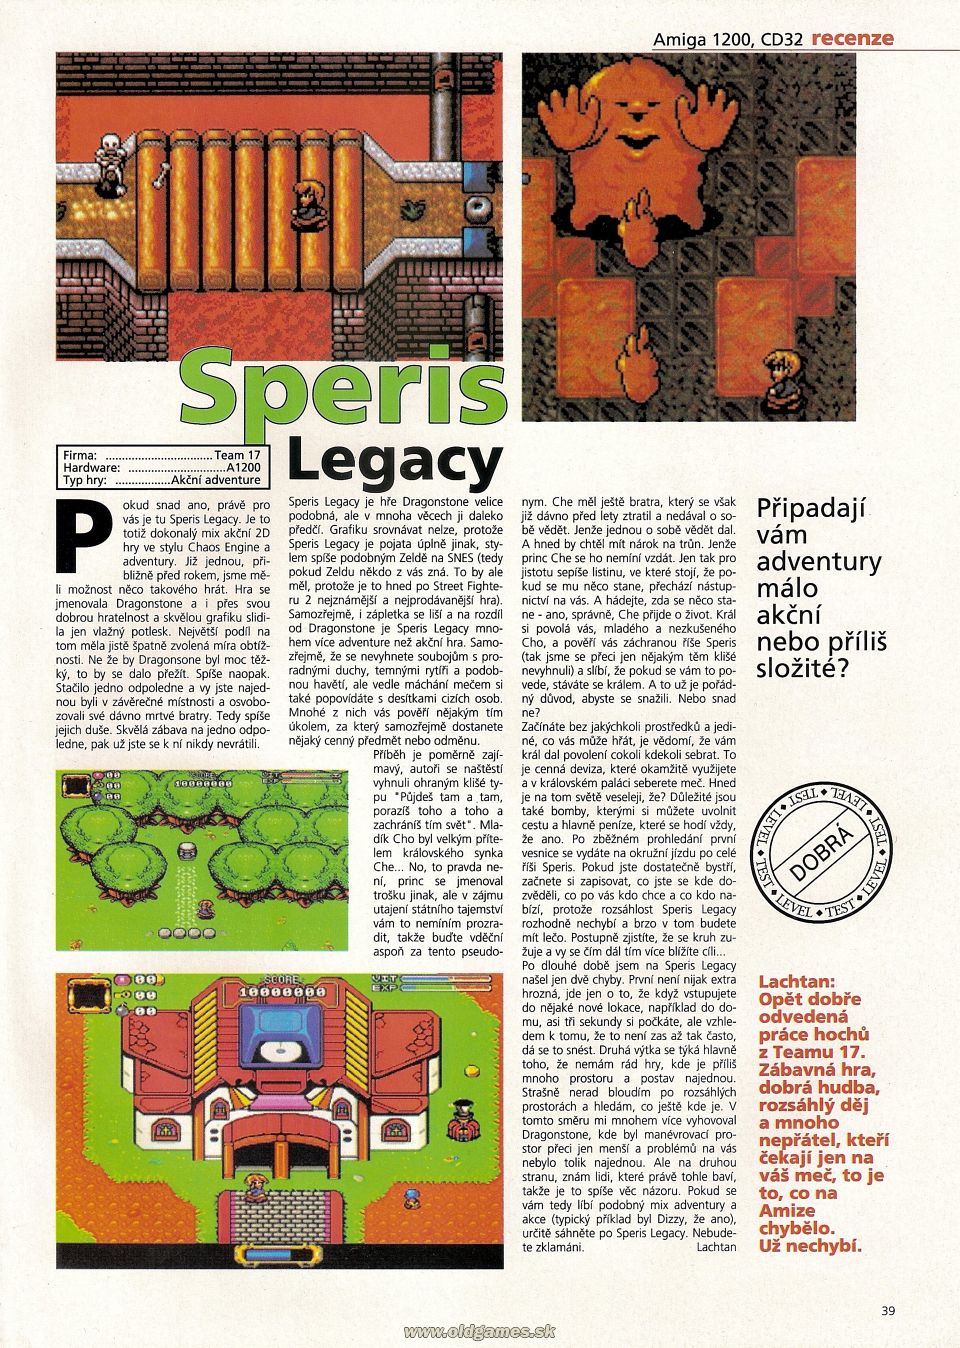 Speris Legacy - Amiga